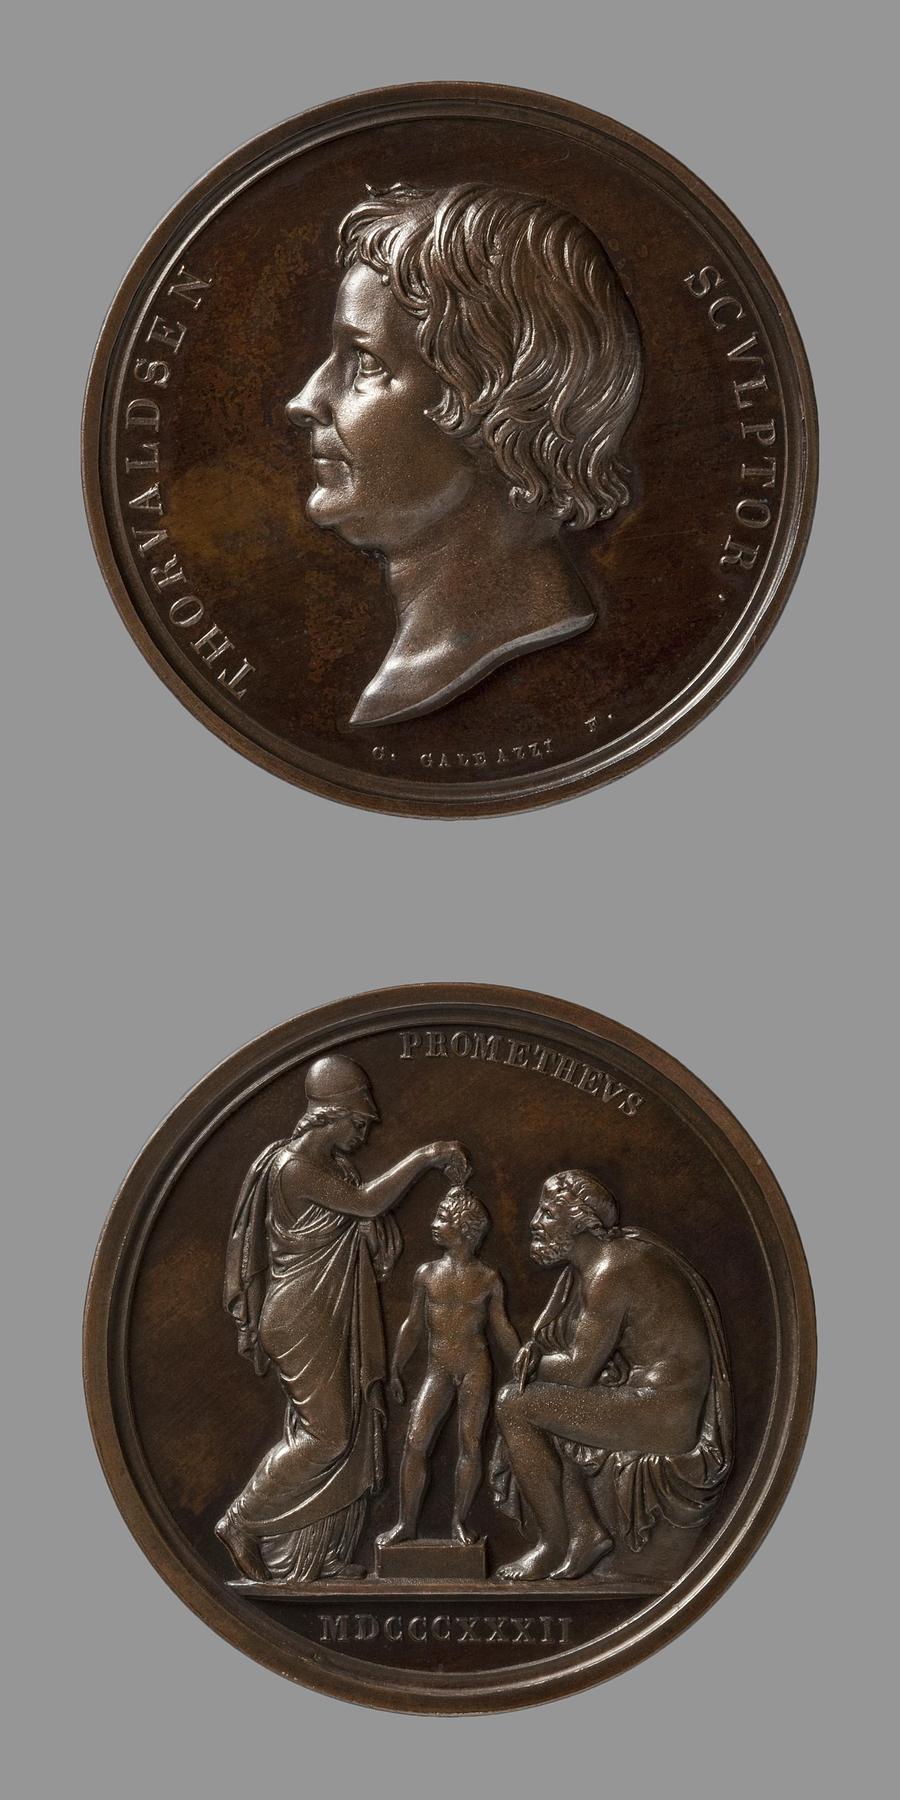 Medaljens forside: Portræt af Thorvaldsen. Medaljens bagside: Minerva og Prometheus, F6